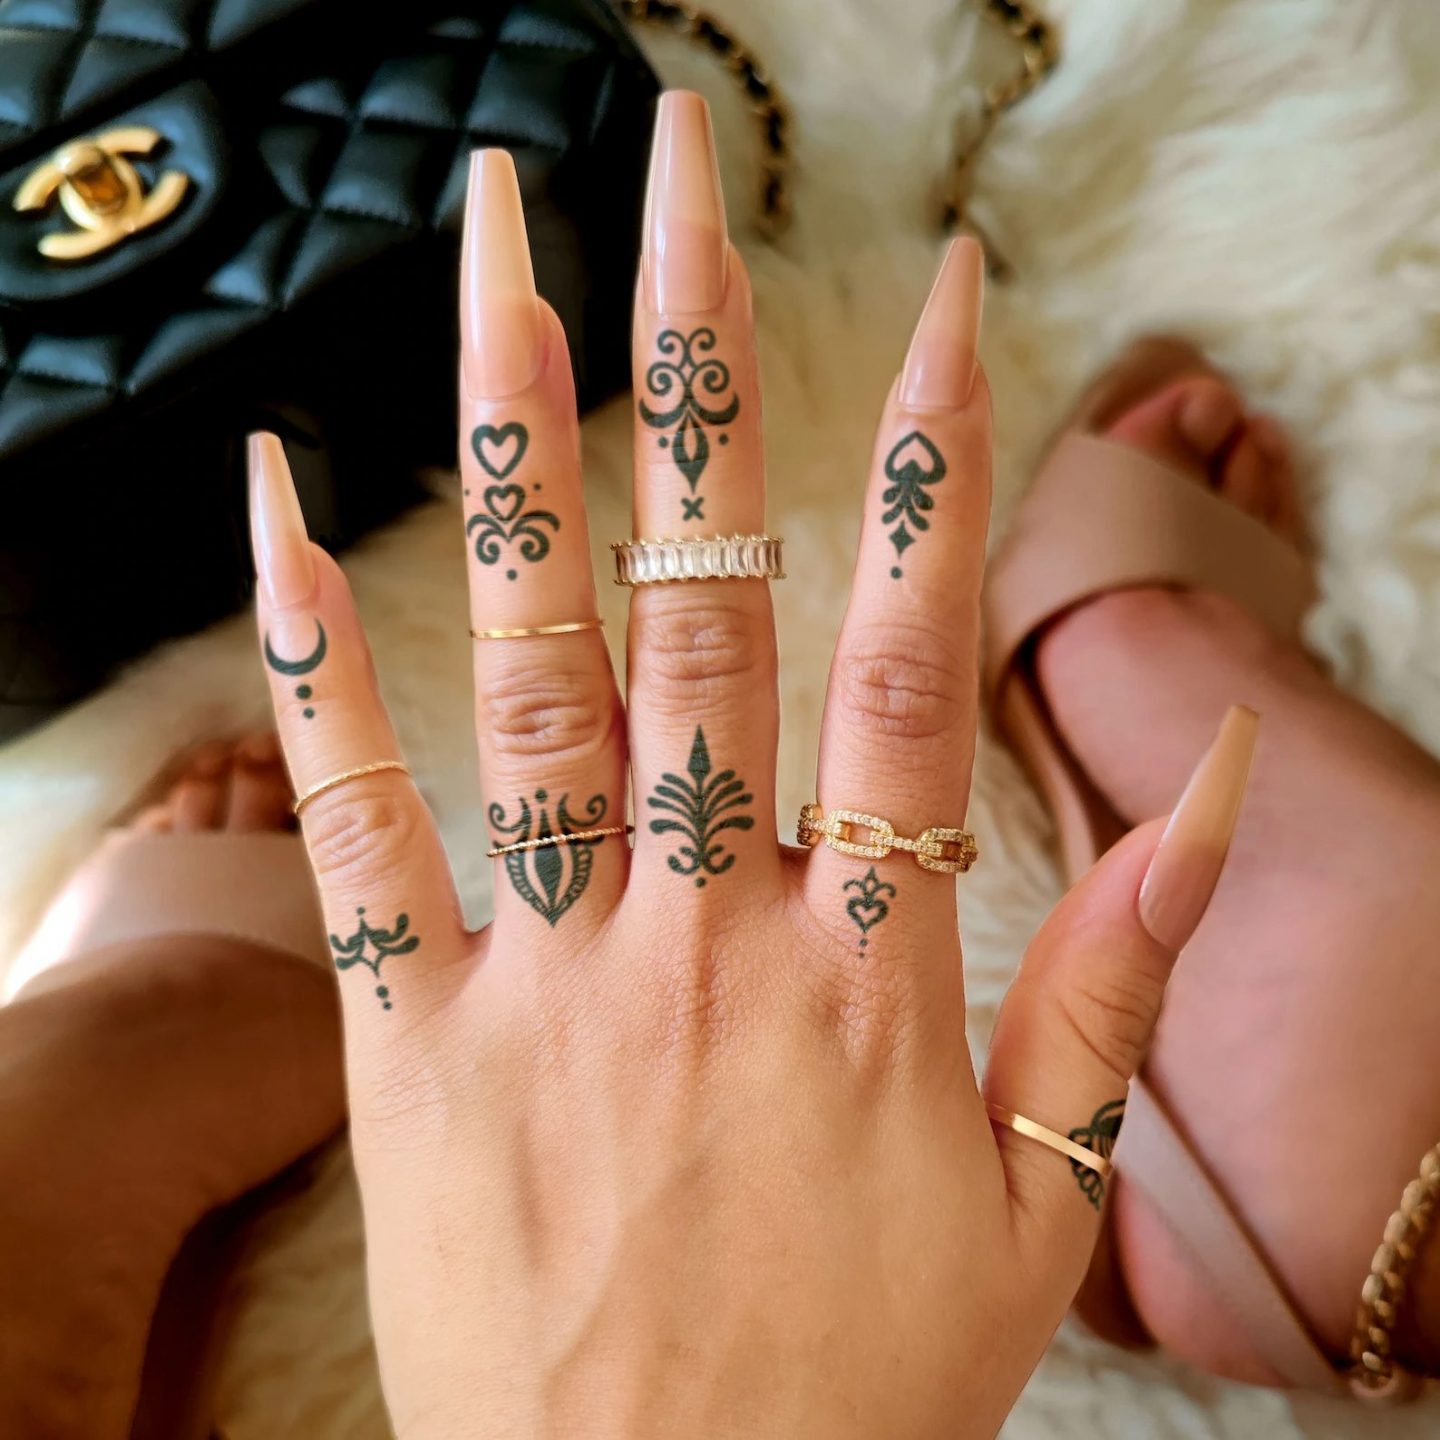 Girly Finger Tattoos